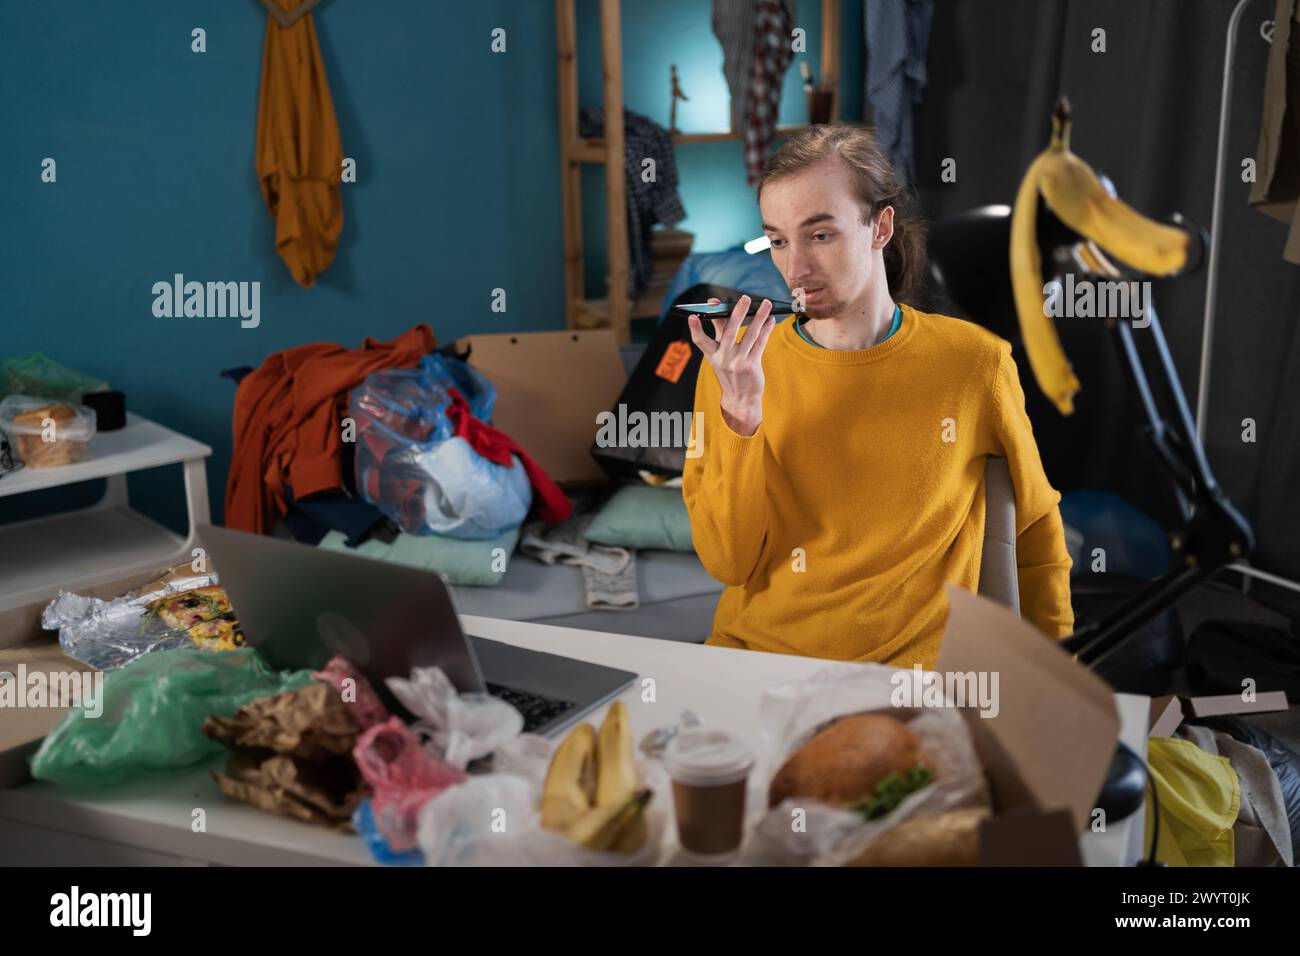 Junger Mann, der in einem unordentlichen Zimmer studiert, diktiert Sprachnachrichten auf dem Smartphone Stockfoto